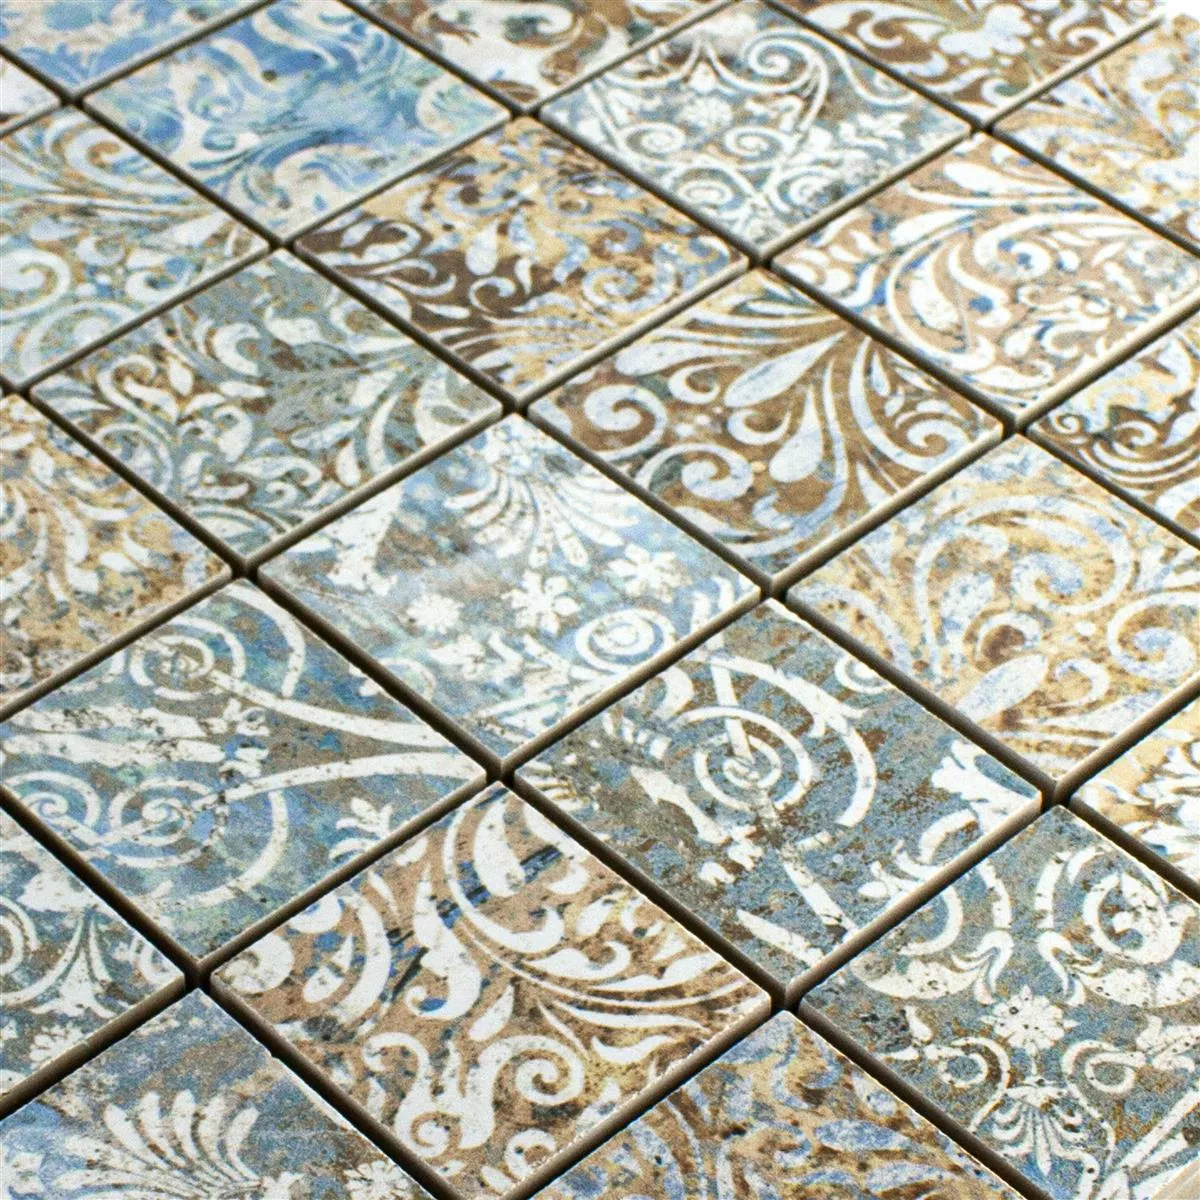 Keramički Mozaik Pločice Patchwork Šarena 47x47mm